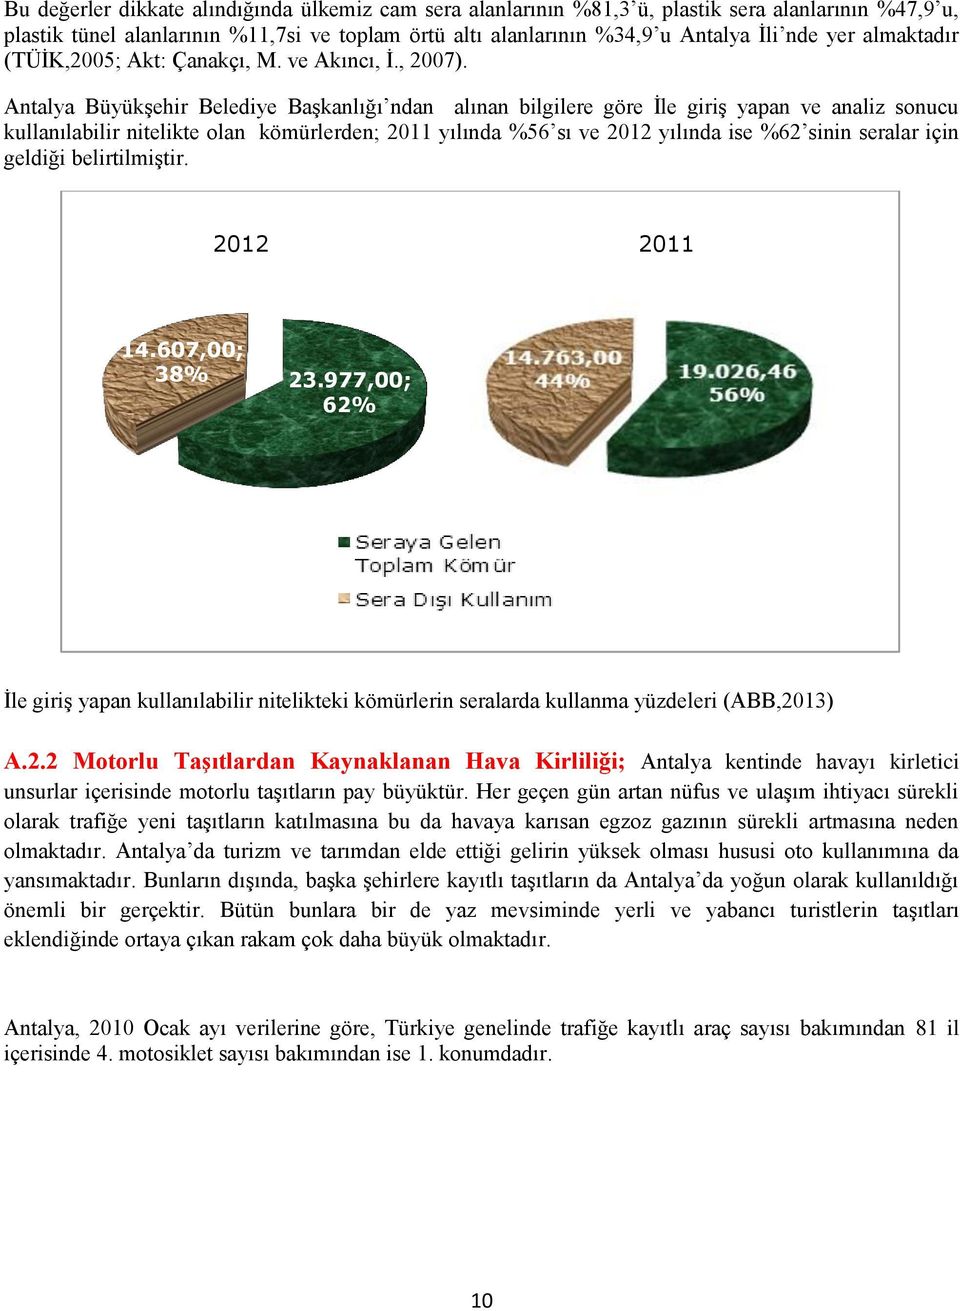 Antalya Büyükşehir Belediye Başkanlığı ndan alınan bilgilere göre İle giriş yapan ve analiz sonucu kullanılabilir nitelikte olan kömürlerden; 2011 yılında %56 sı ve 2012 yılında ise %62 sinin seralar